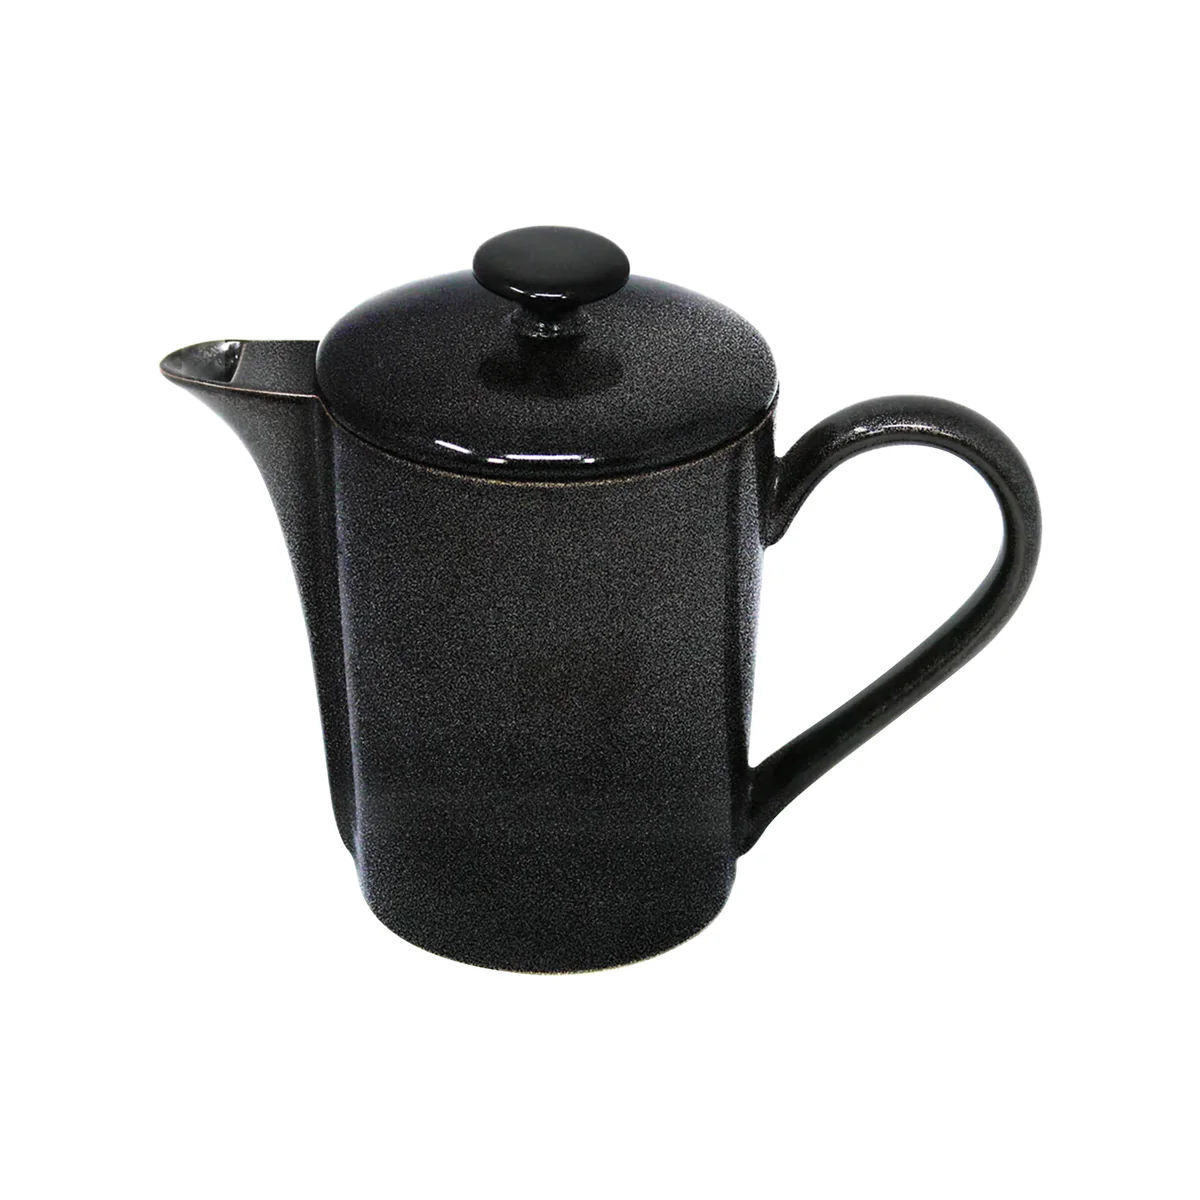 NOIR PAILLETÉ - Coffee pot